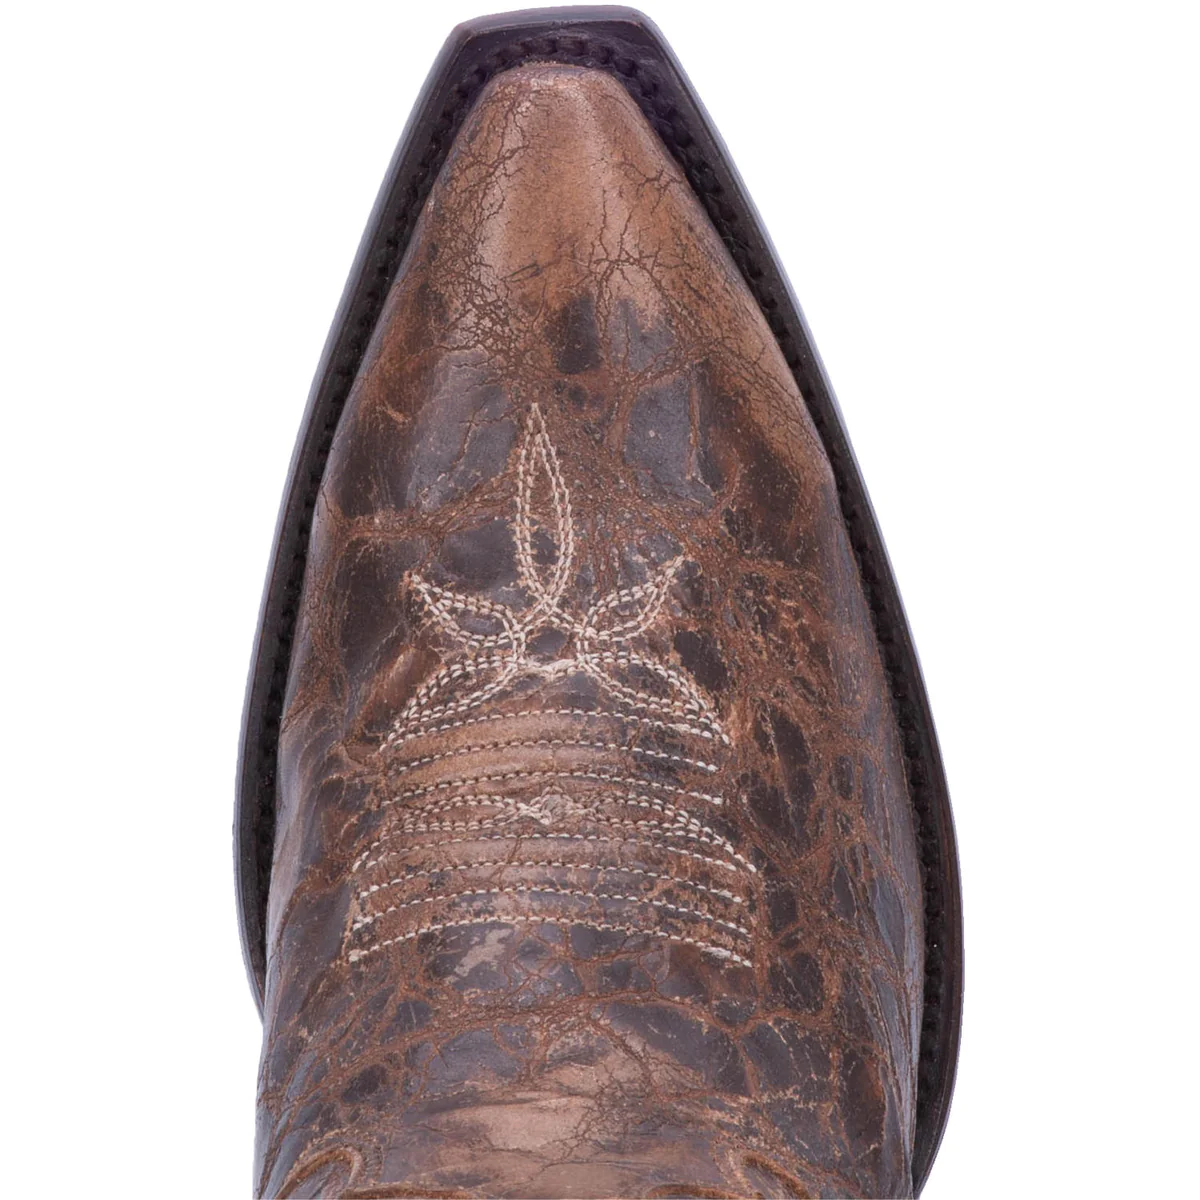 DAN POST Jilted Leather Boot Rustic Snip Toe